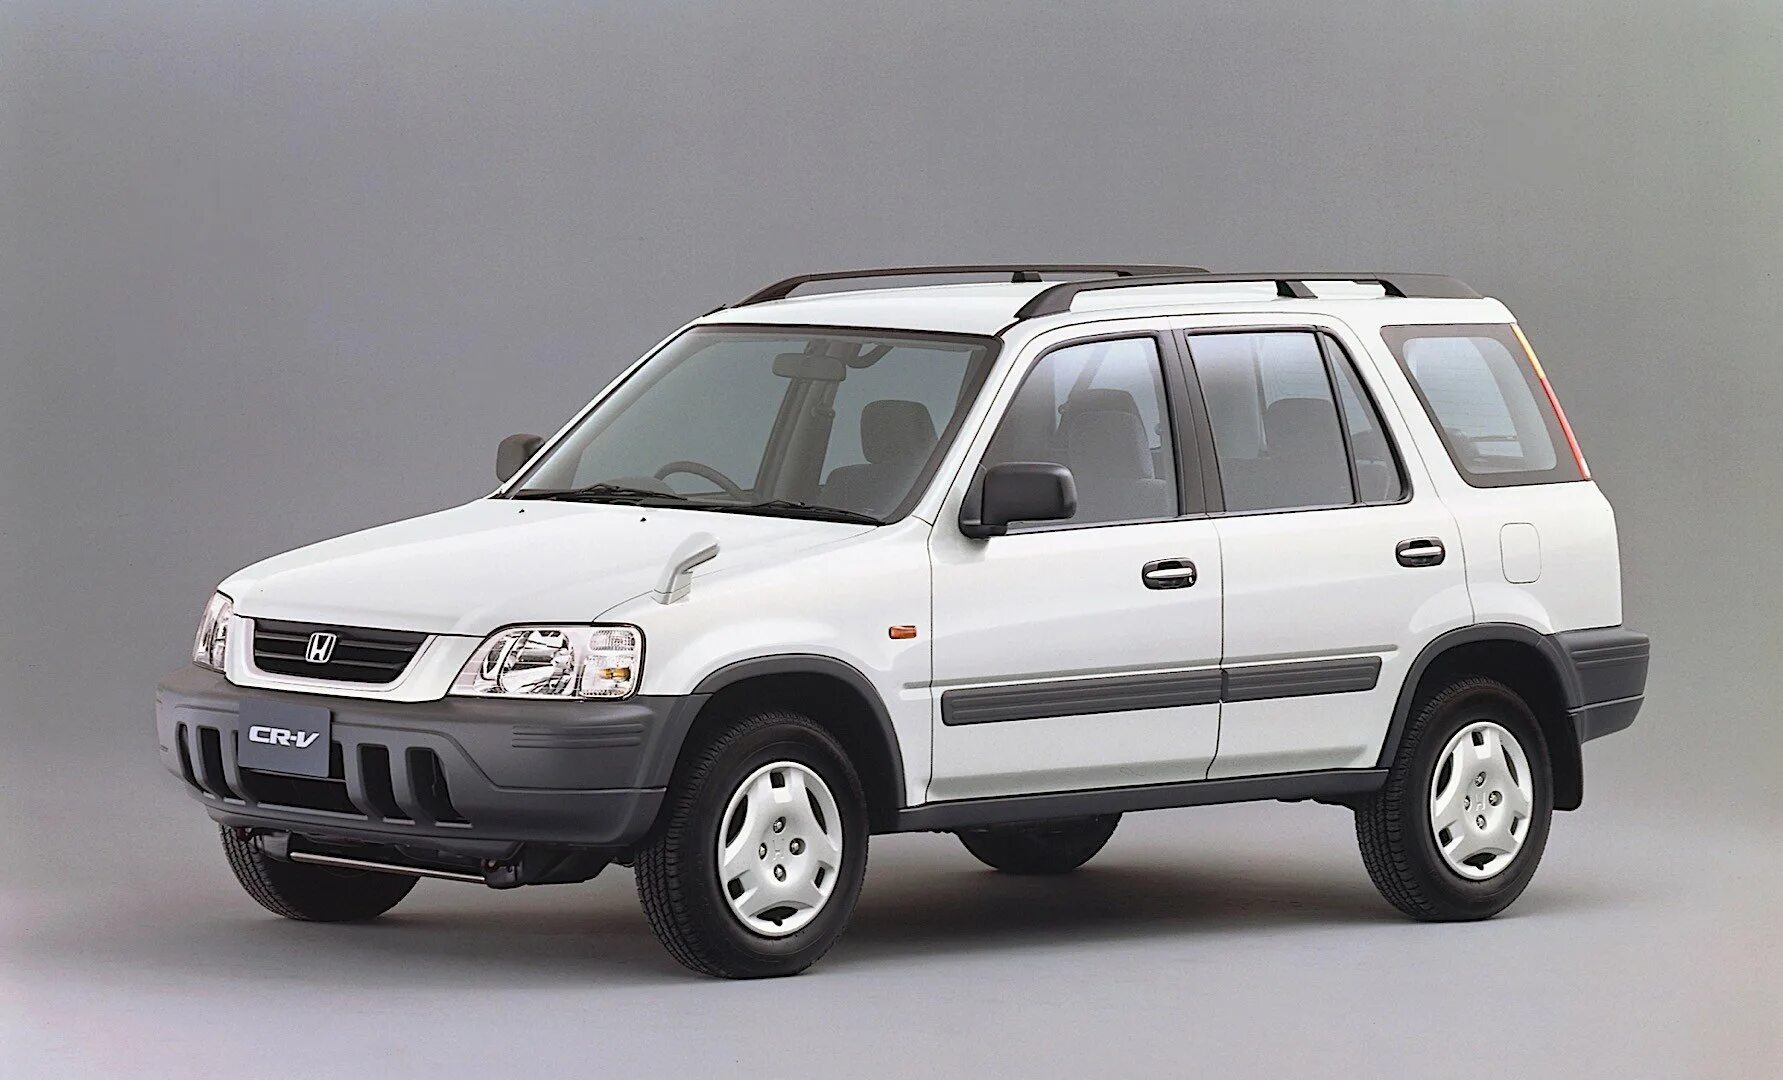 Honda CRV 1998. Хонда CRV 1996. Honda CRV 1995. Honda CR-V 1998.